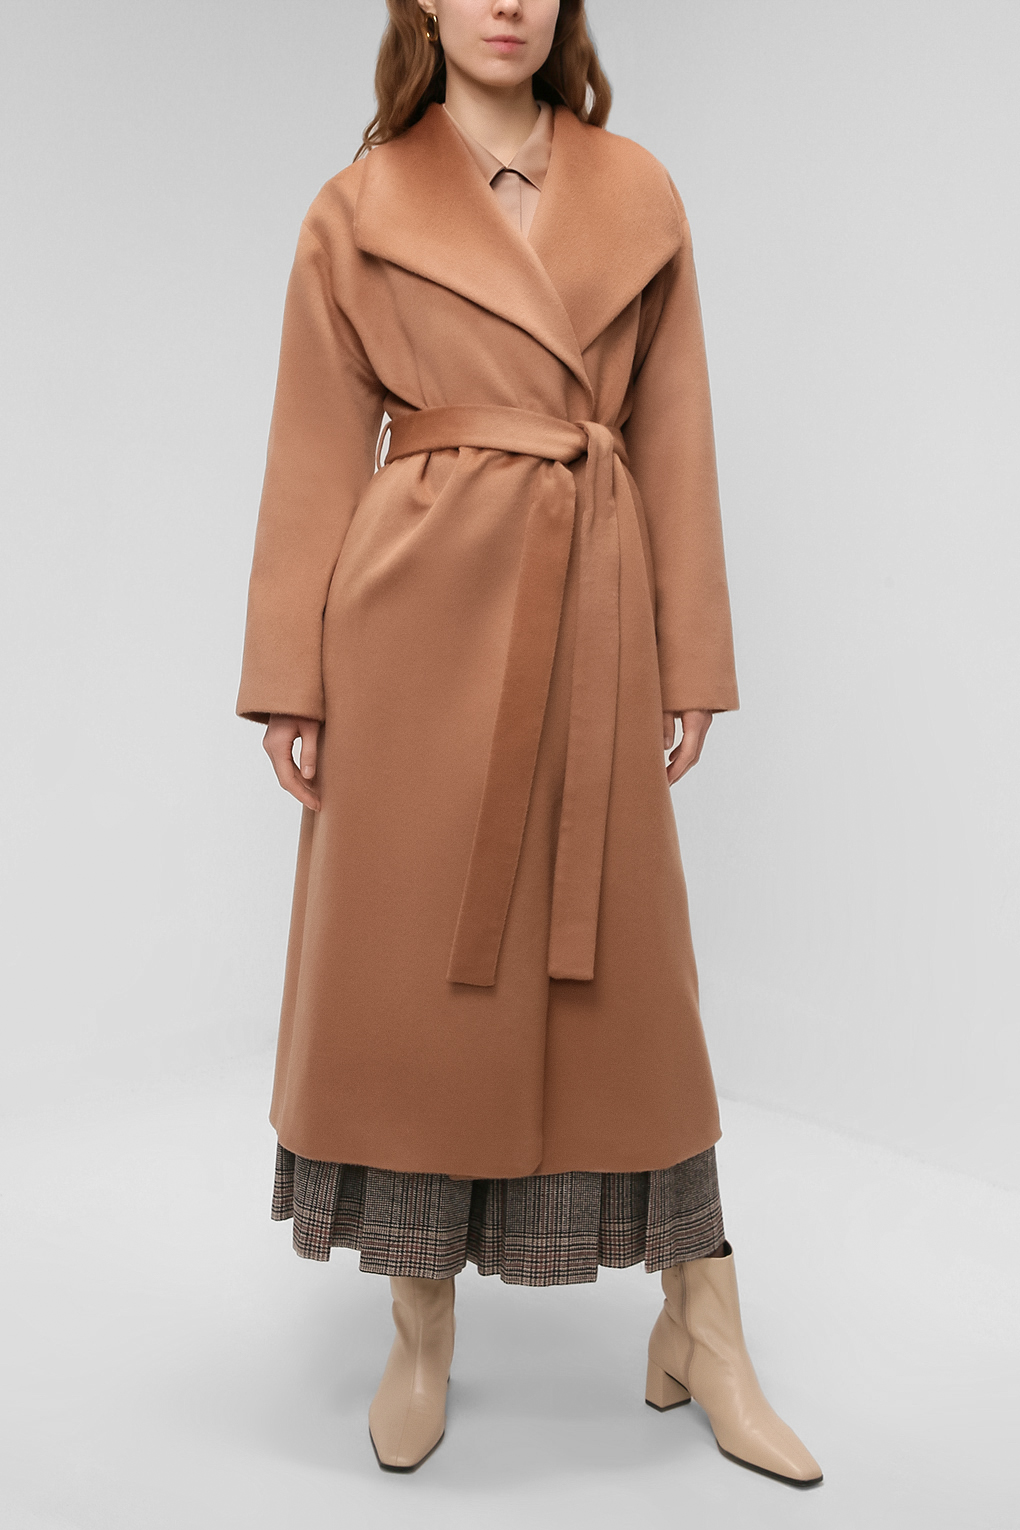 Пальто женское PAOLA RAY PR221-9040 коричневое XS